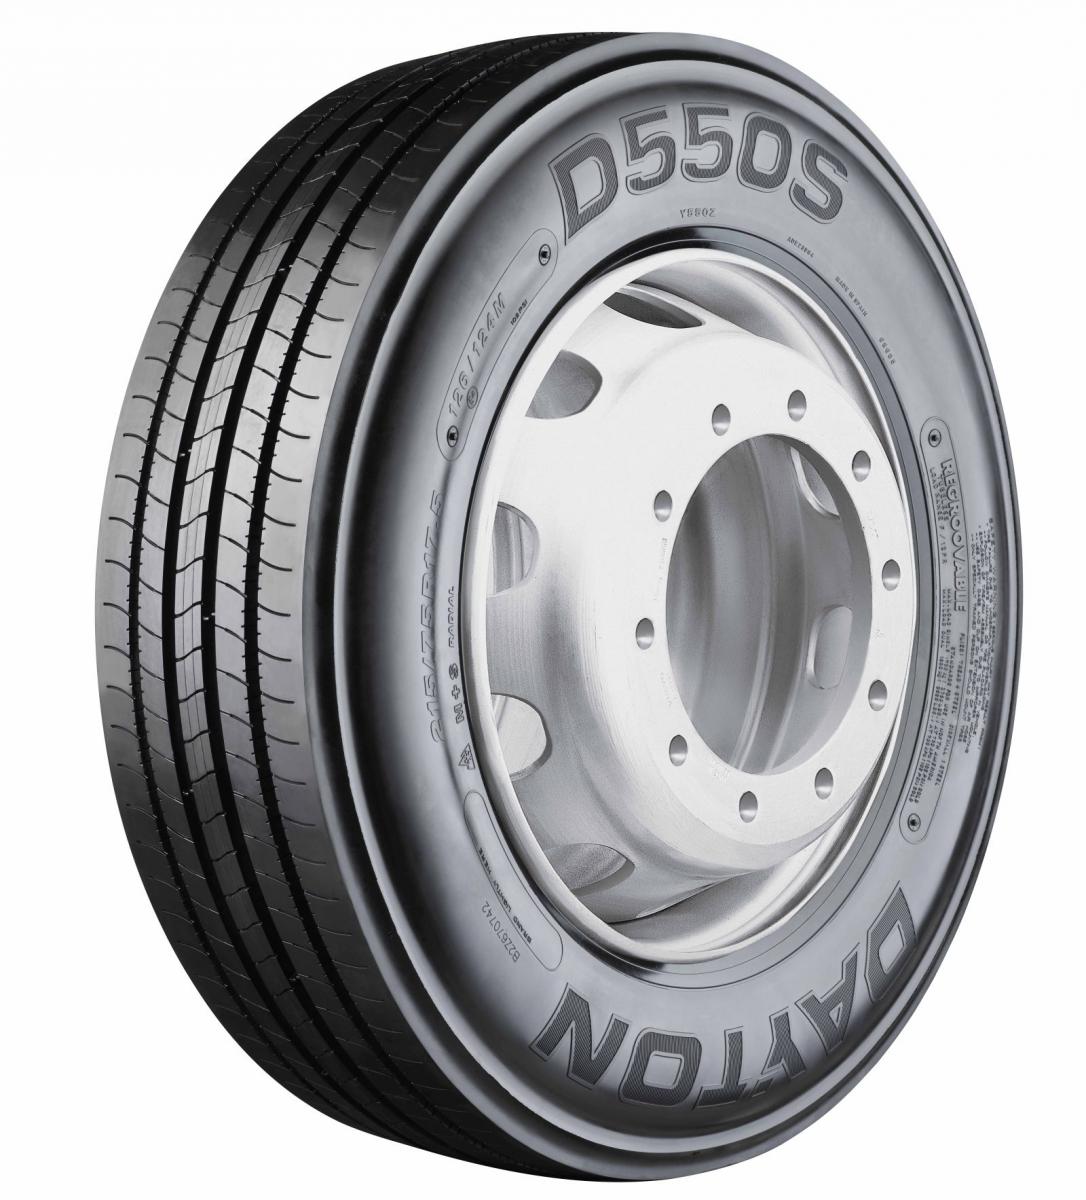 Nová vodicí pneumatika Dayton D550S 